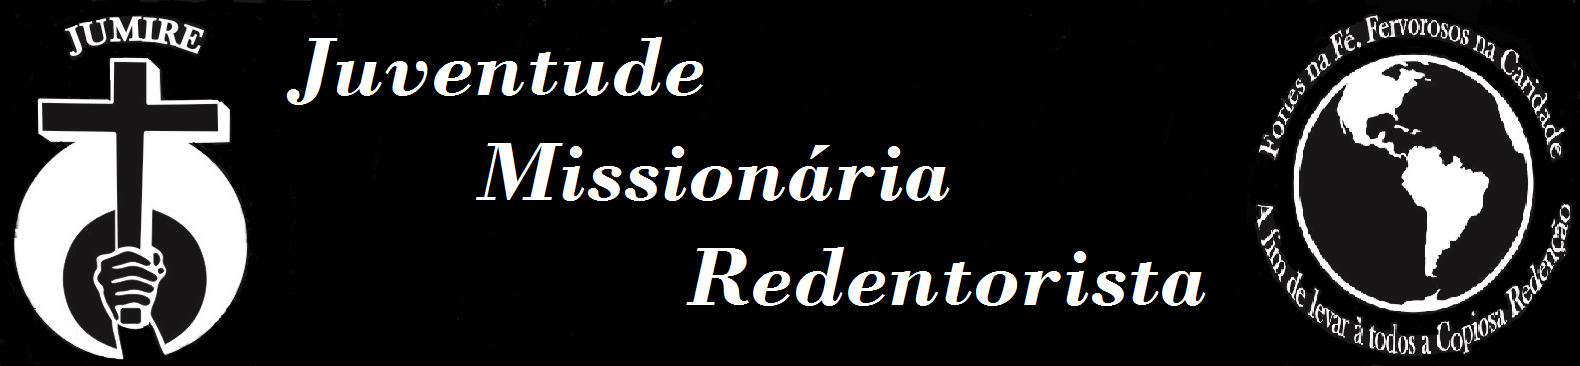 Juventude Missionária Redentorista - São Paulo